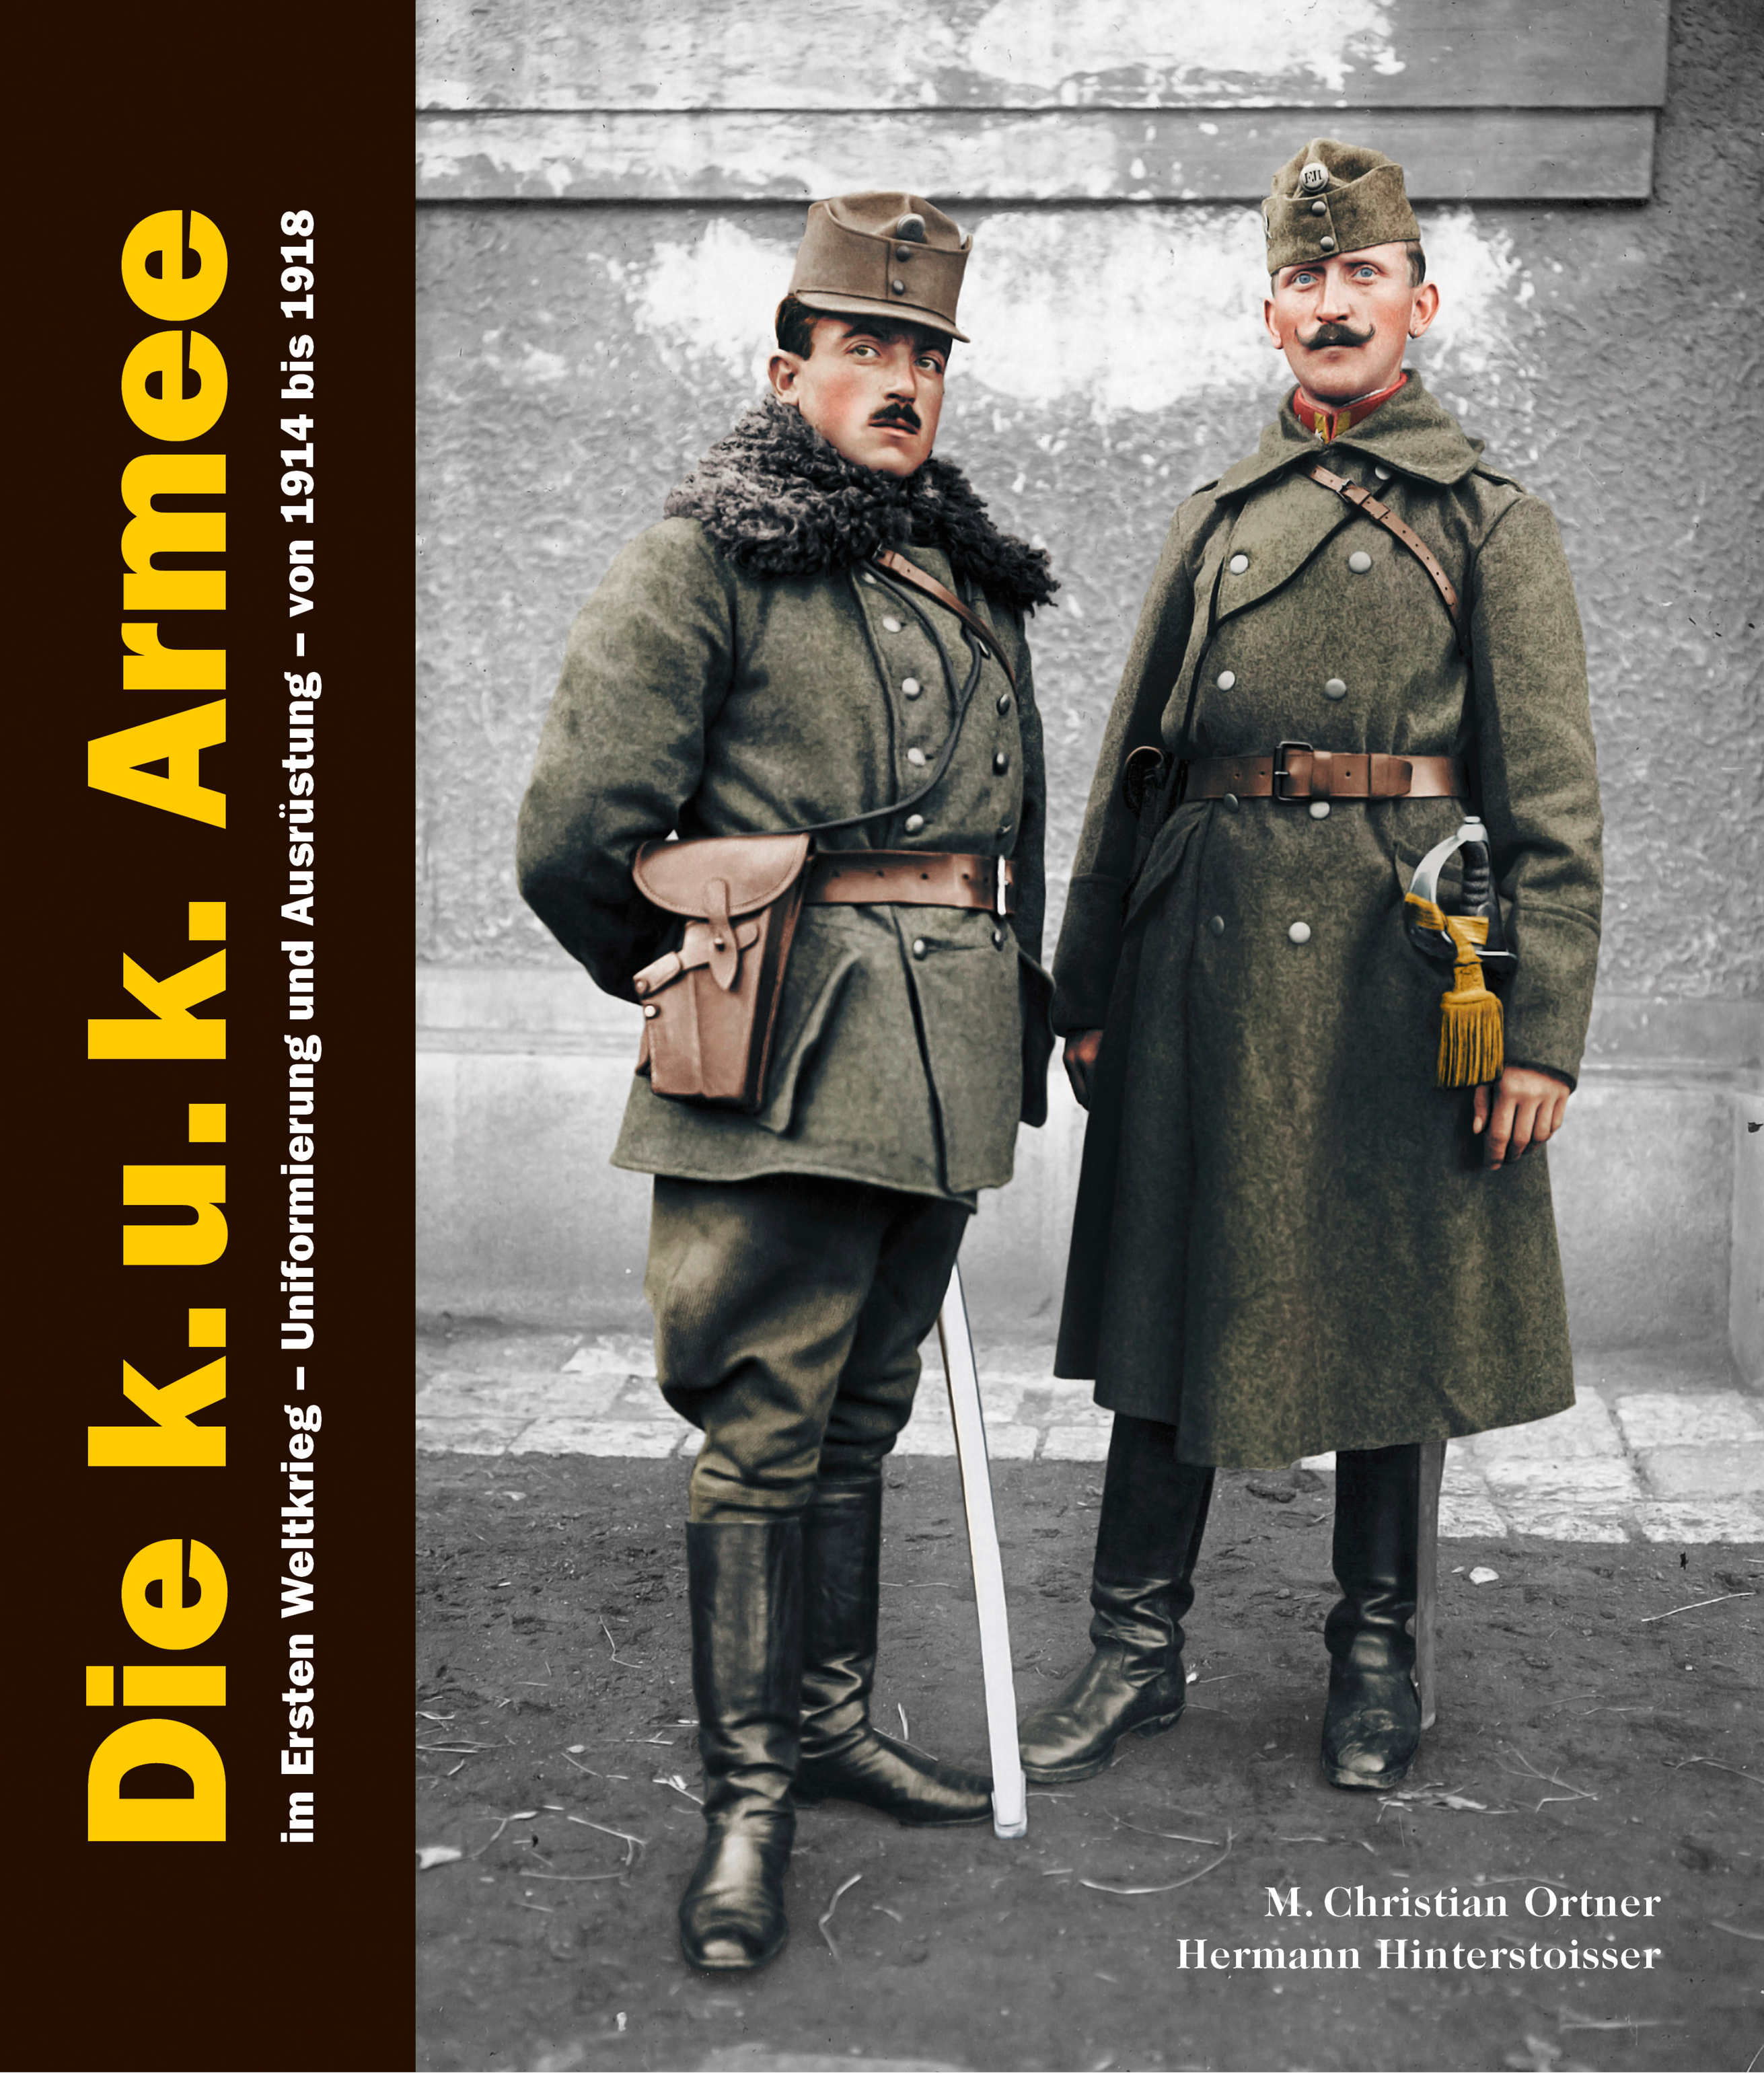 Österreich-Ungarns Heer im Ersten Weltkrieg – Wikipedia